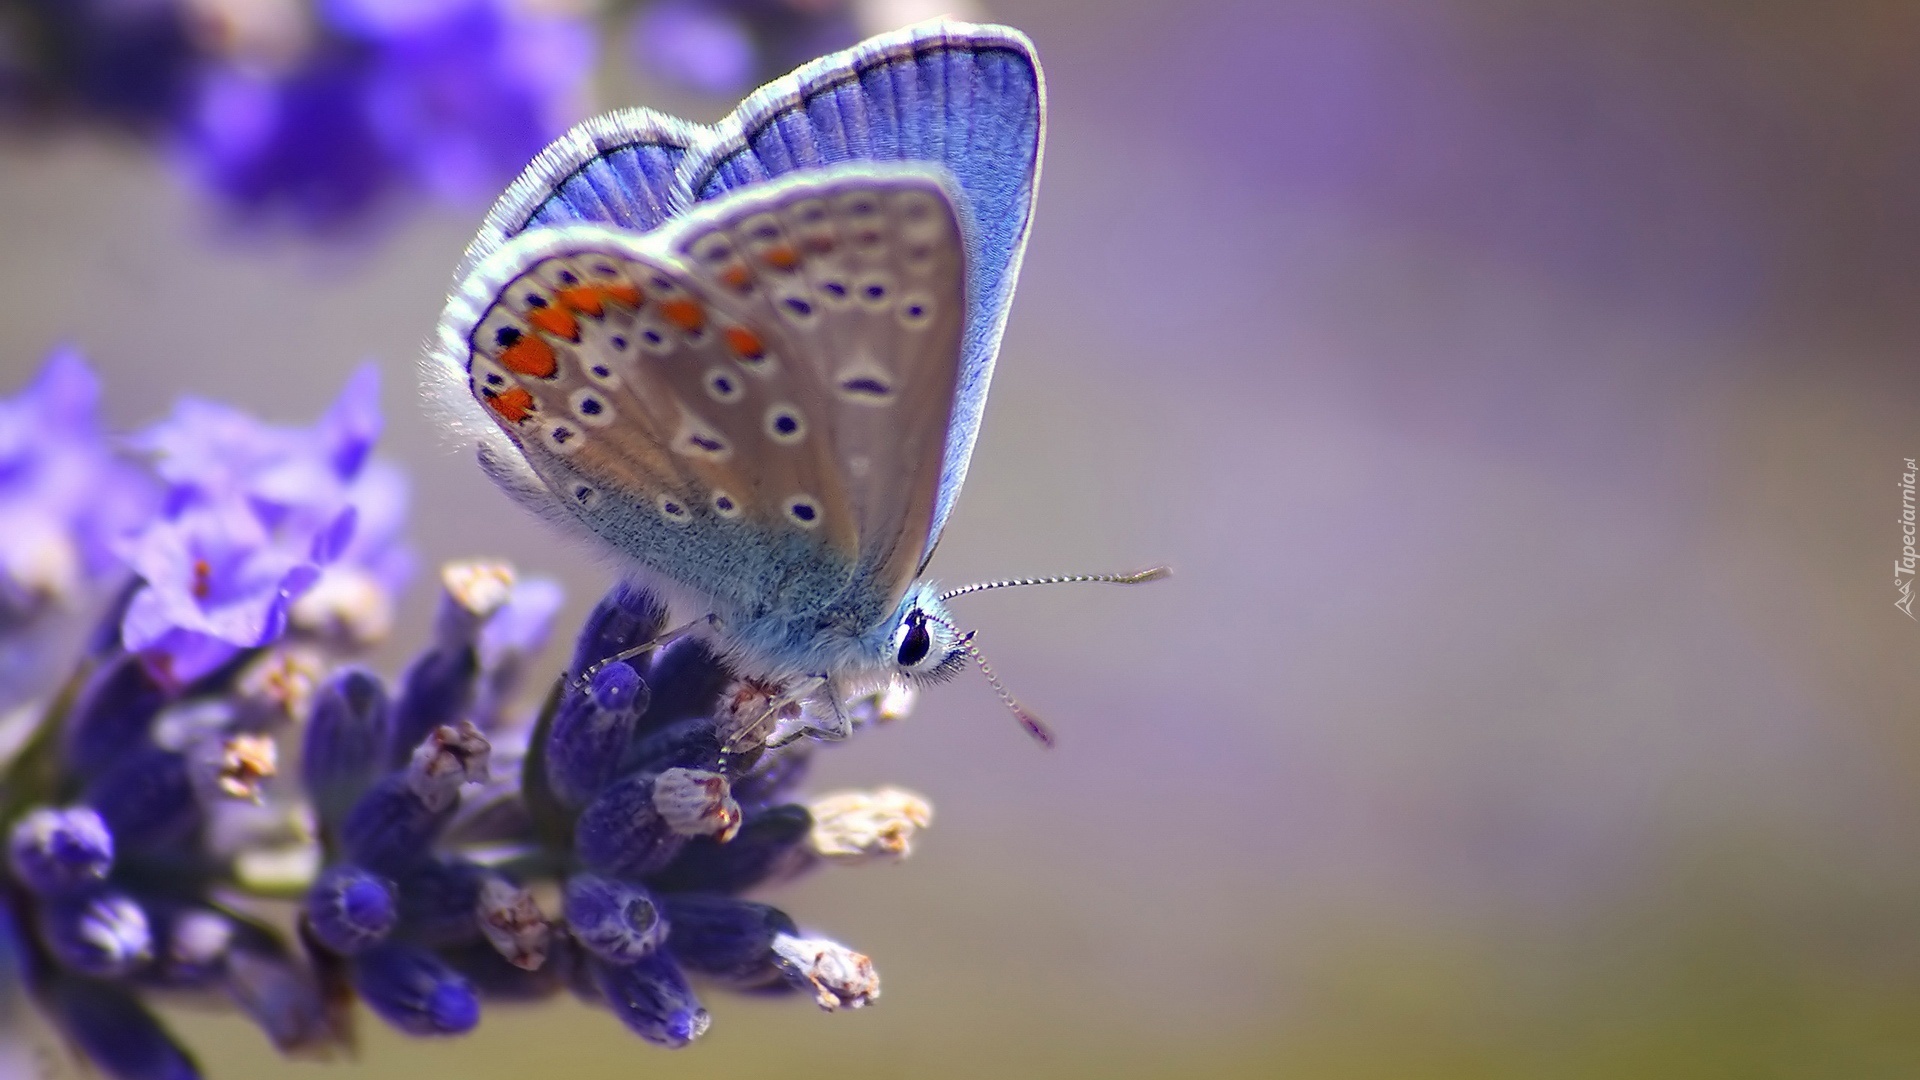 Błękitny, Motyl, Kwiat